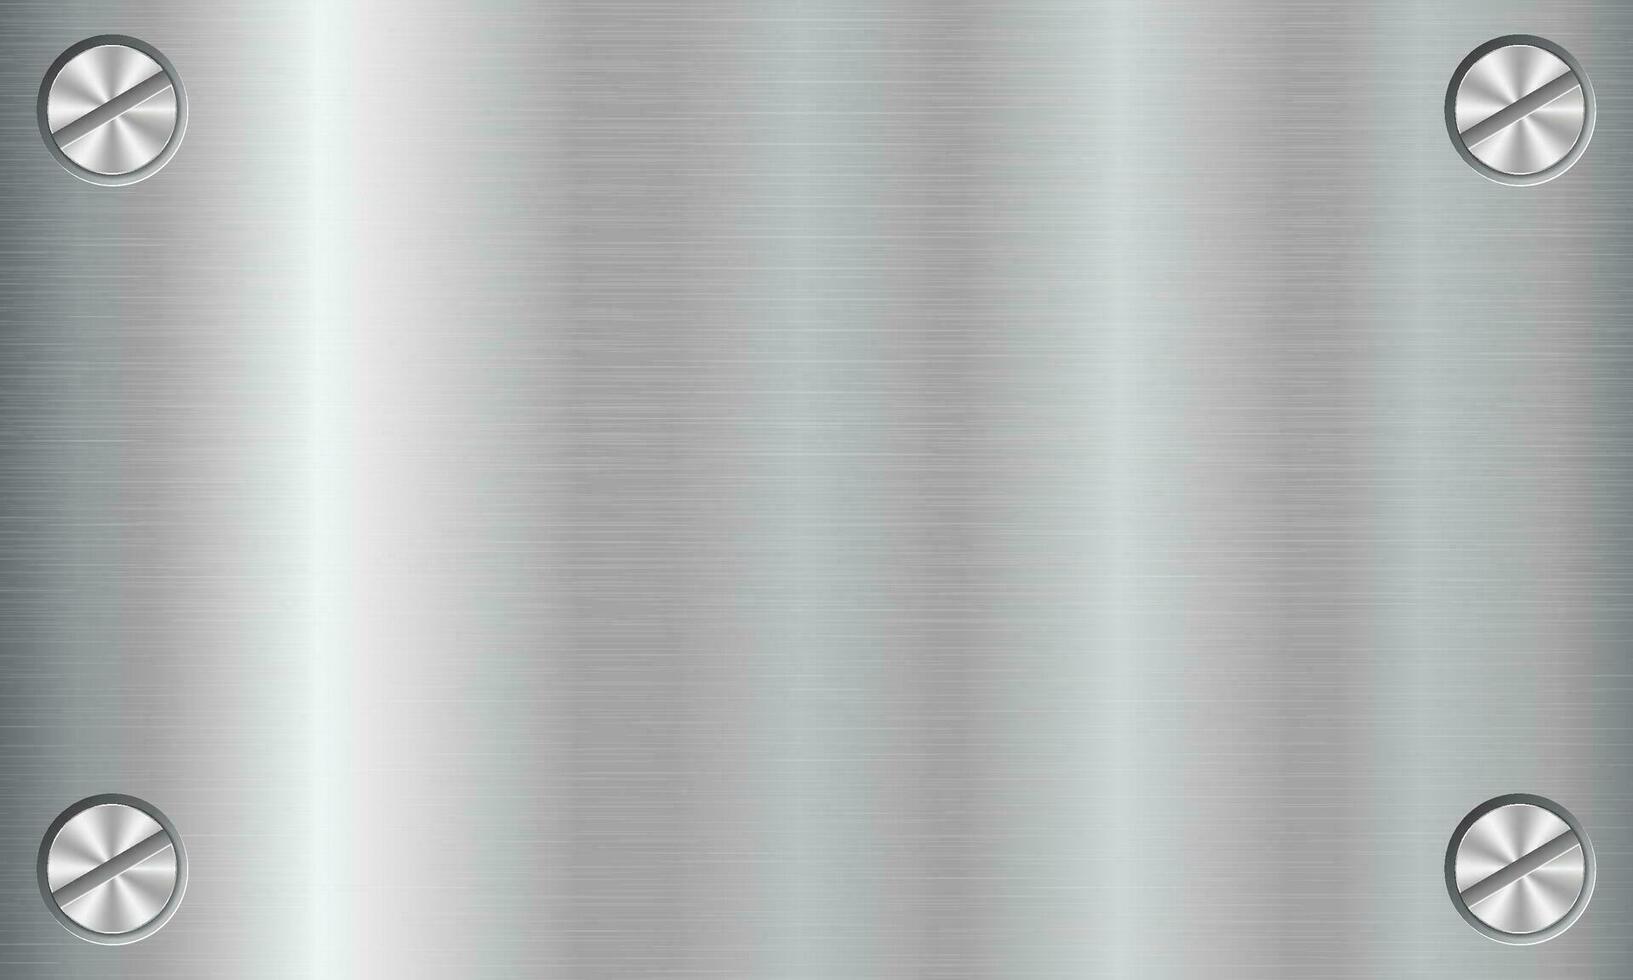 zilver metaal structuur achtergrond met schroeven. aluminium bord met schroeven. staal achtergrond. vector illustratie